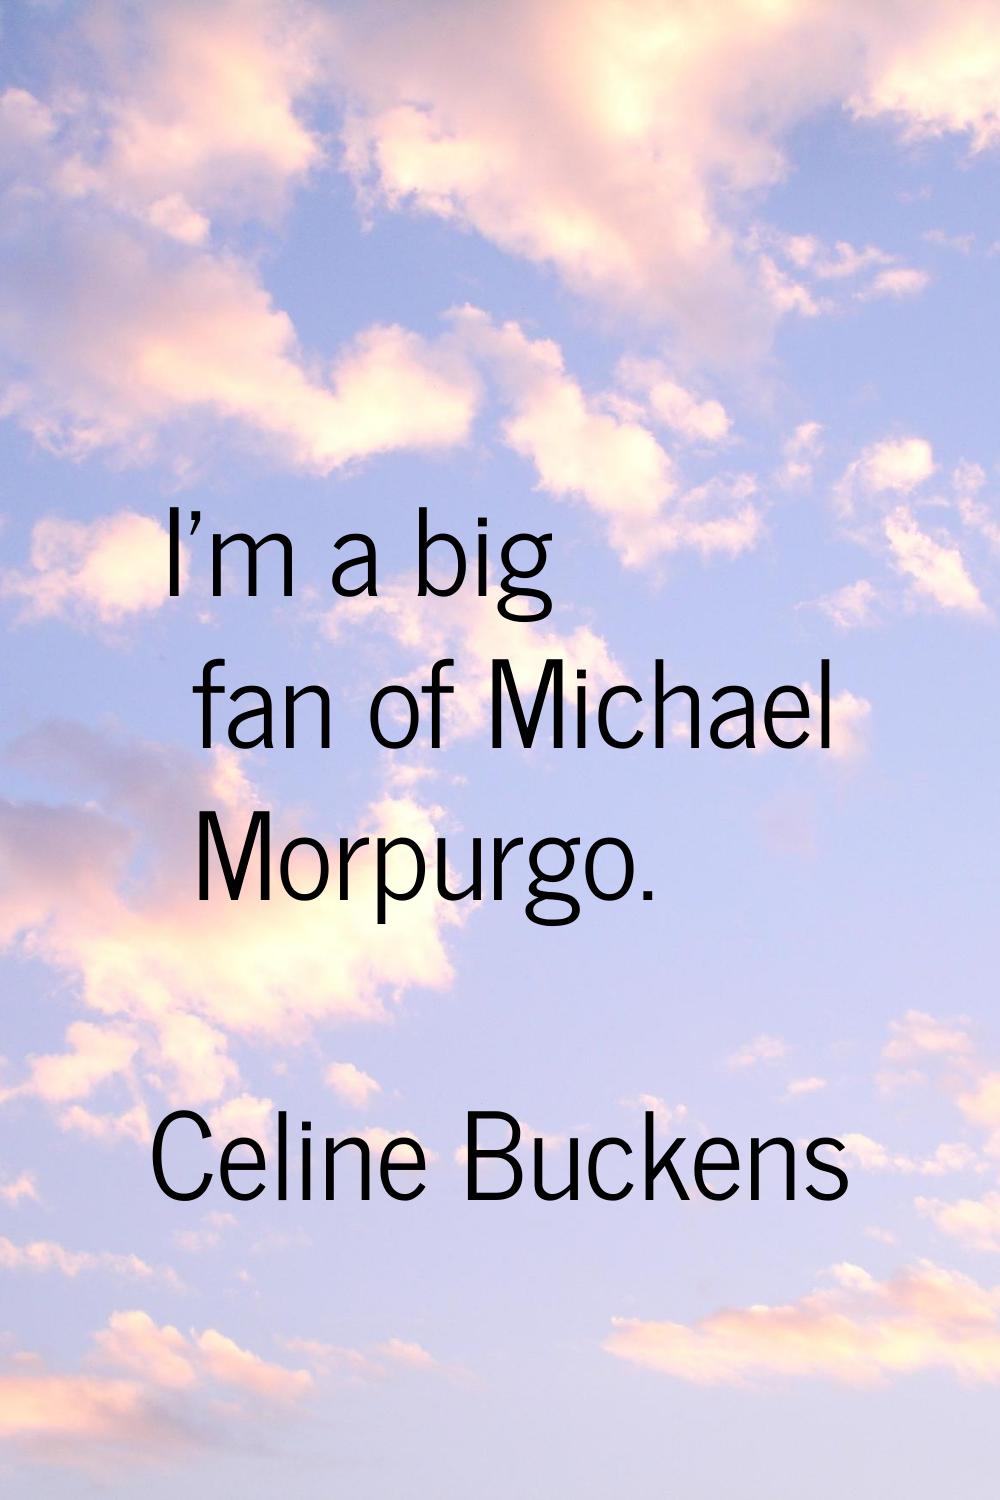 I'm a big fan of Michael Morpurgo.